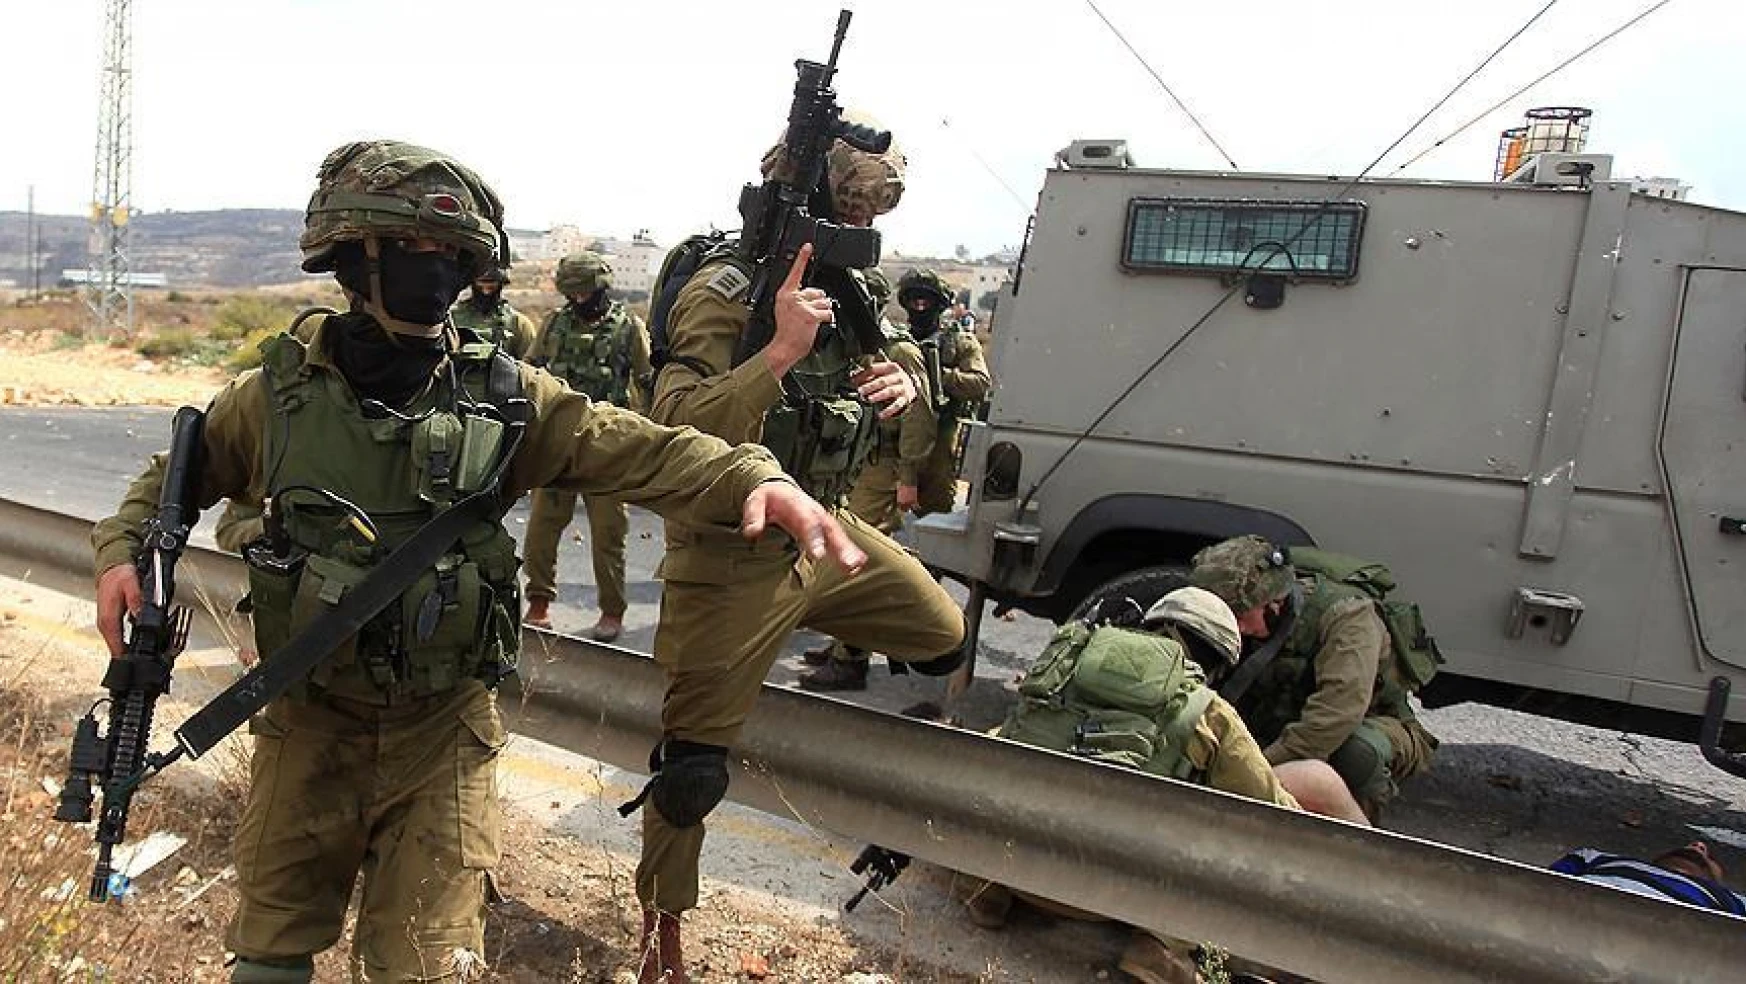 İsrail askerleri işledikleri suçlardan ceza almıyor